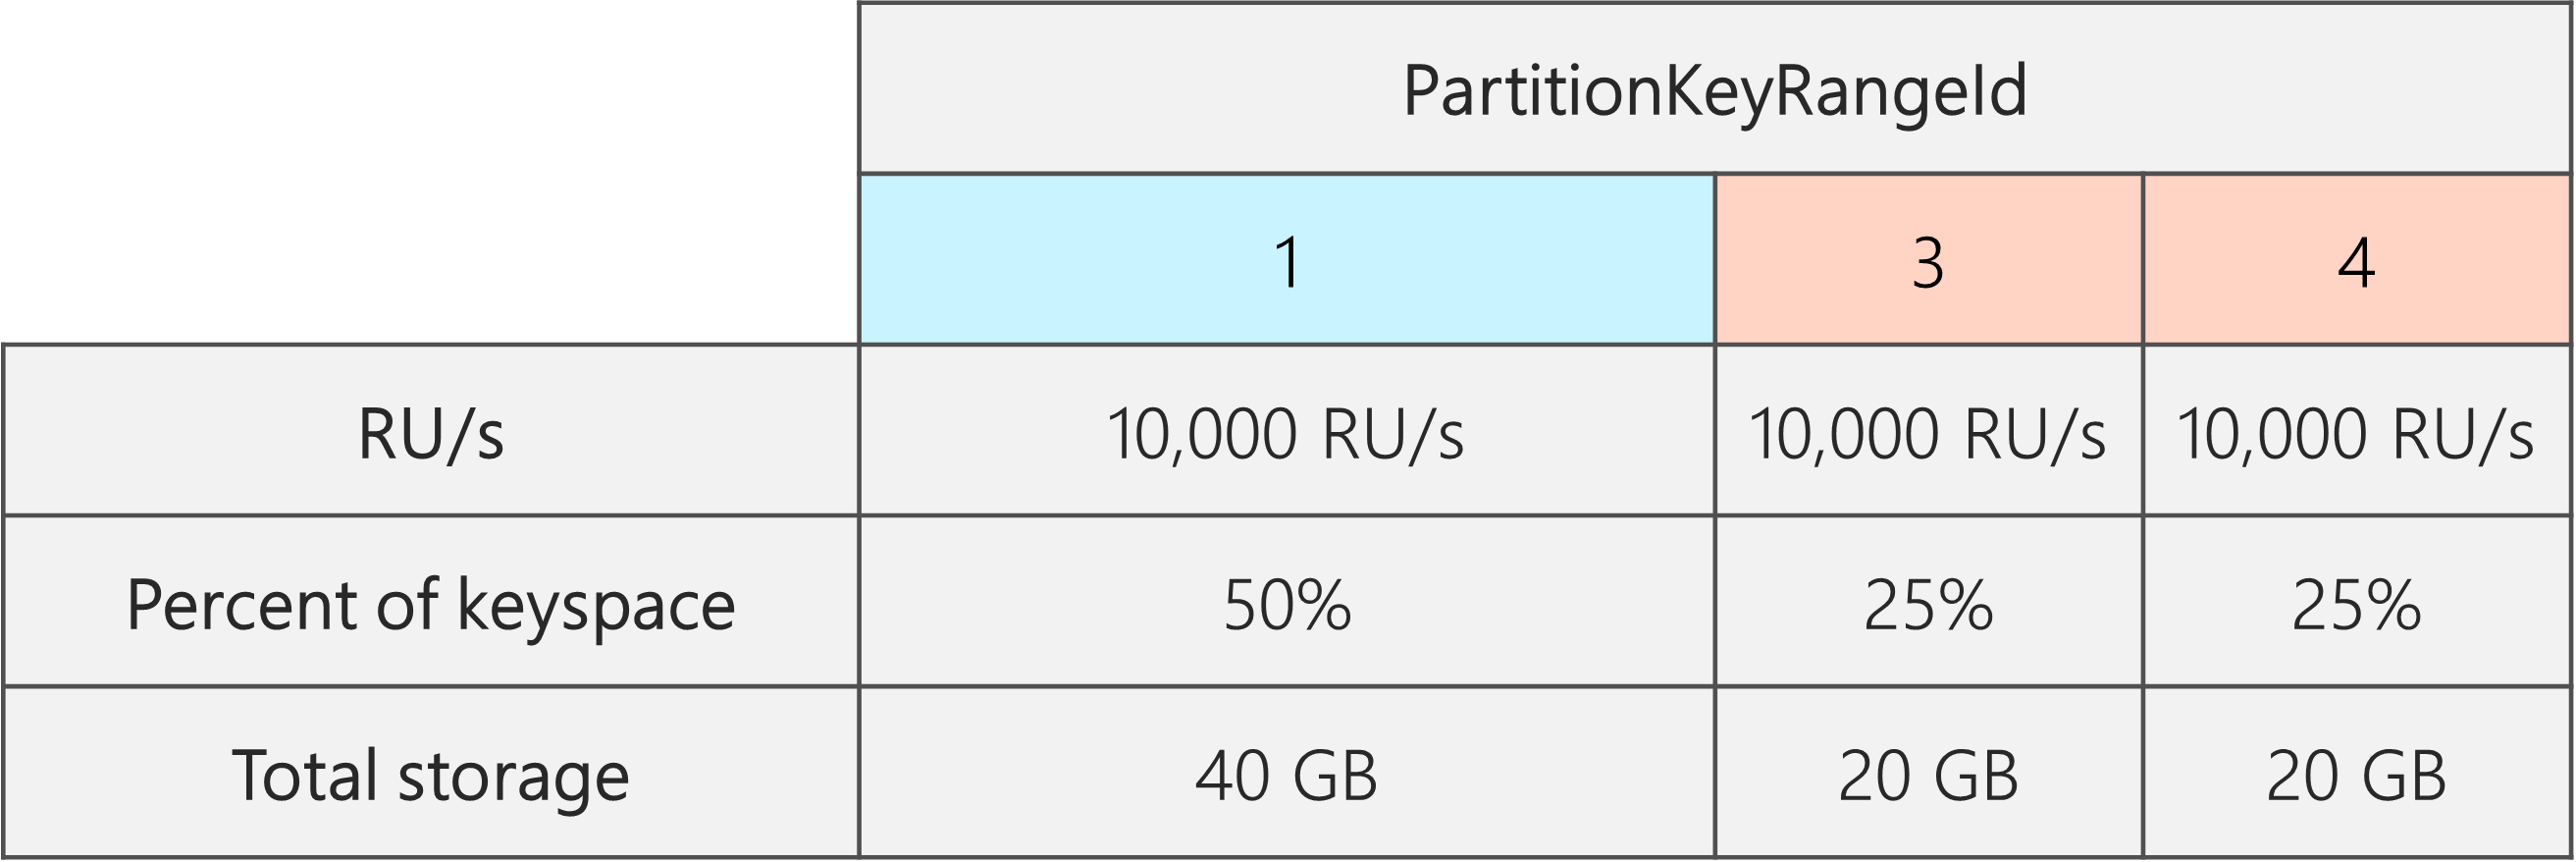 Nach der Aufteilung gibt es 3 PartitionKeyRangeIDs mit jeweils 10.000 RU/Sekunde. Einer der PartitionKeyRangeIDs sind jedoch 50 % des gesamten Keyspace (40 GB) zugewiesen, während den zwei anderen PartitionKeyRangeIDs 25 % des gesamten Keyspace (20 GB) zugewiesen sind.